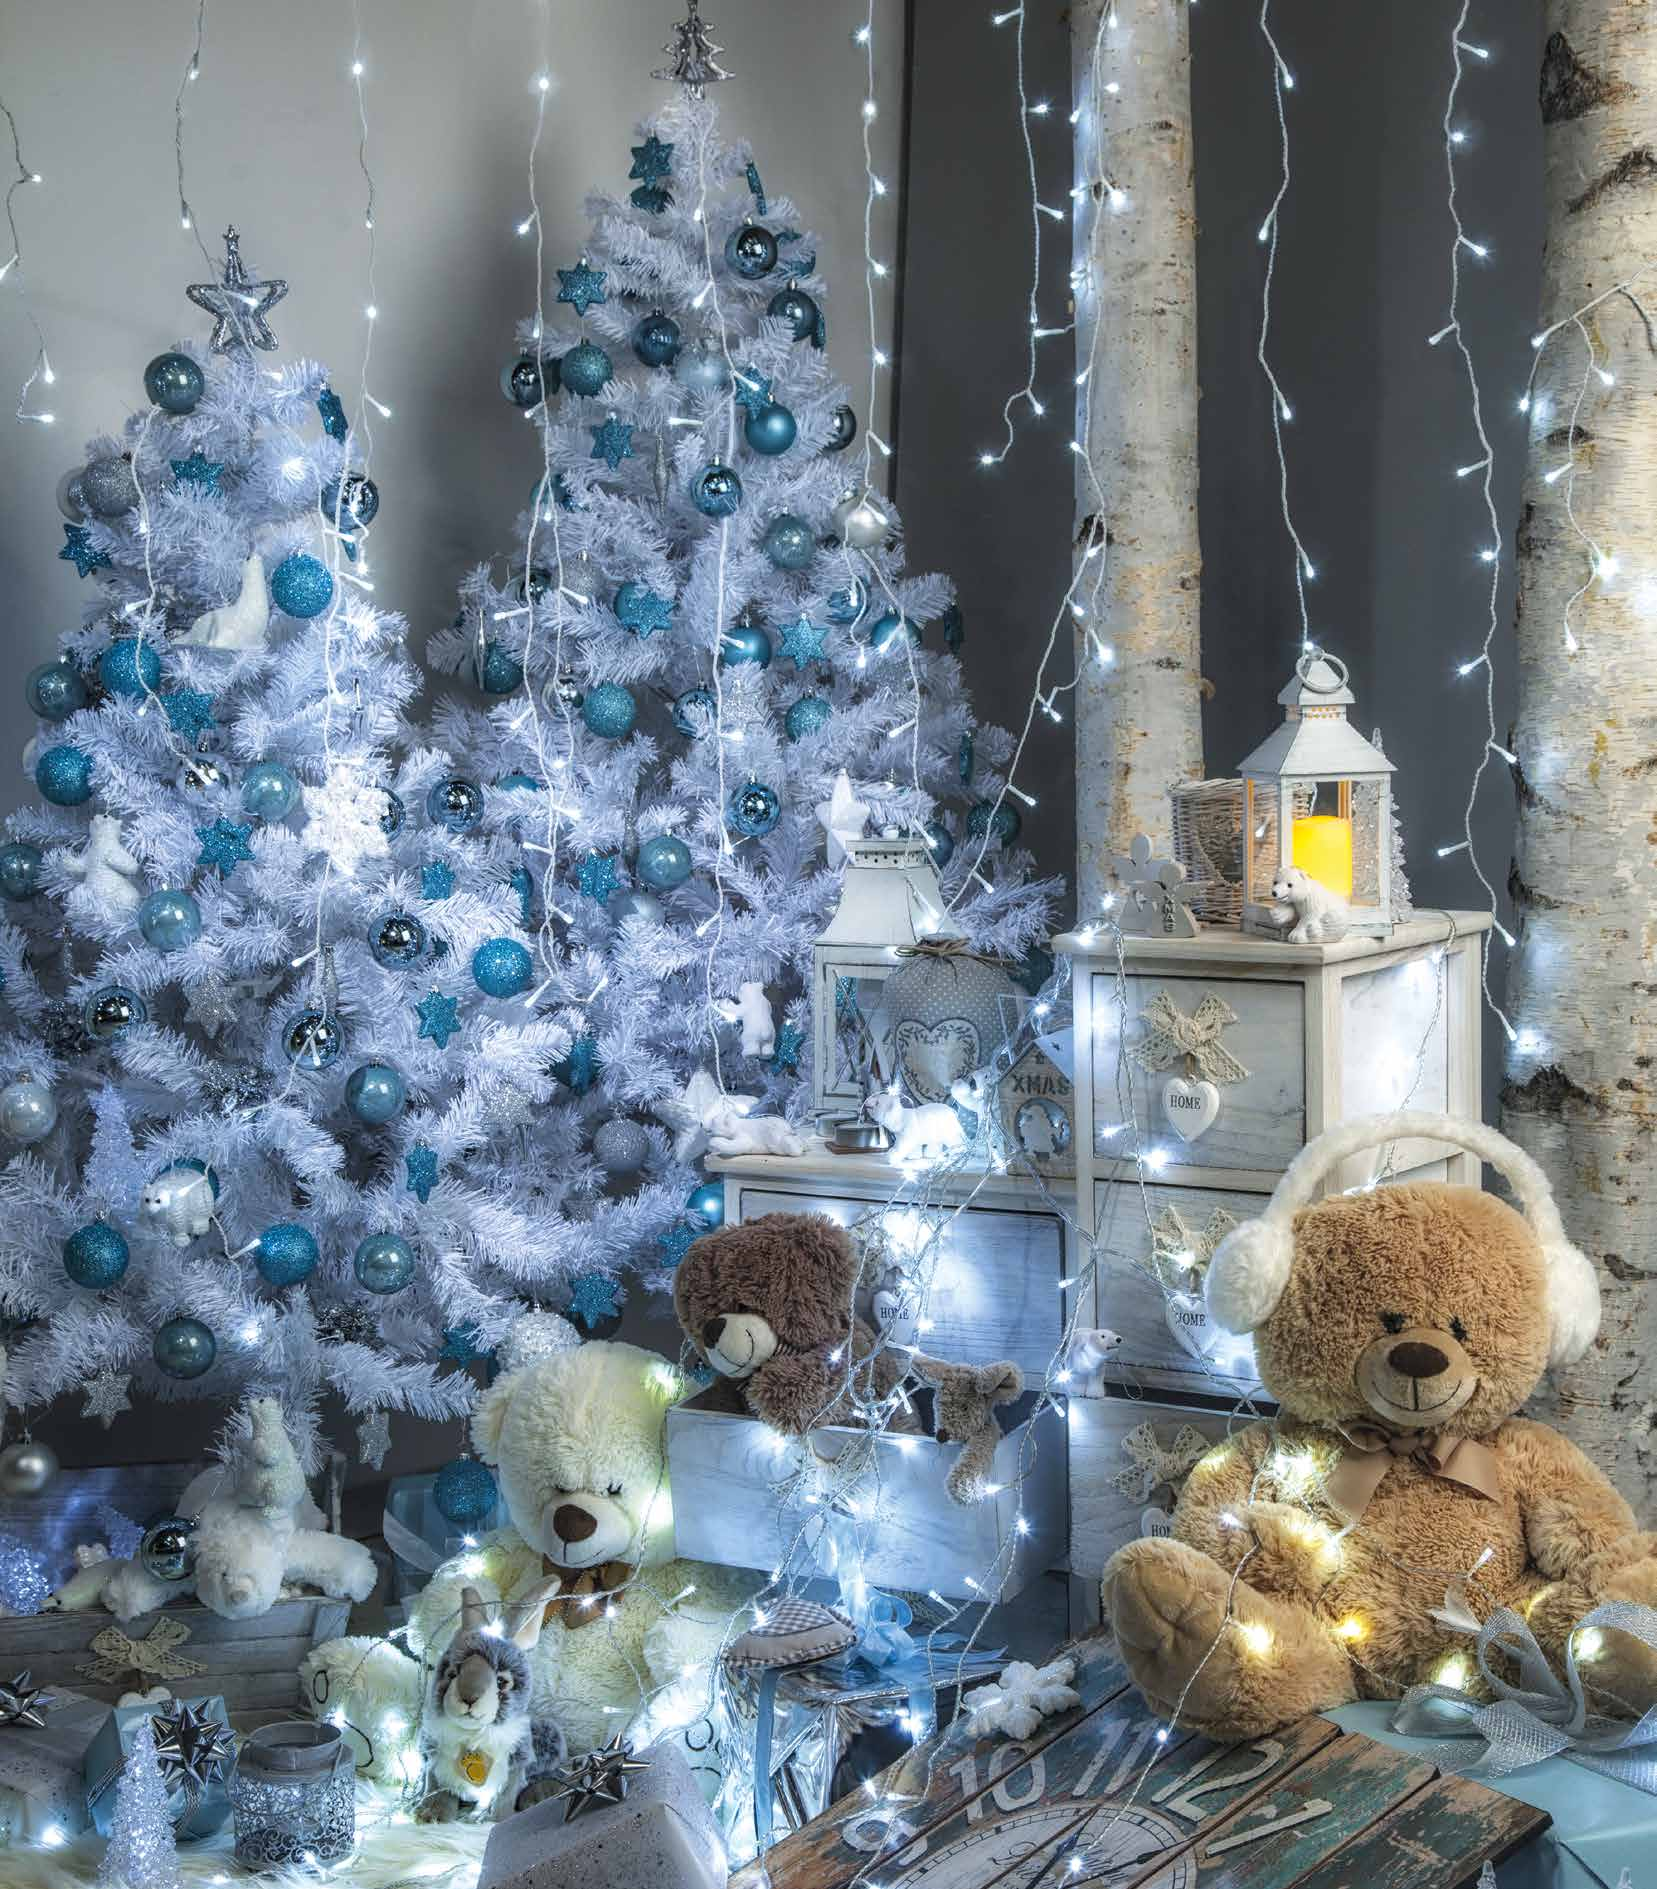 Tenda di stalattiti 16, Natale è un'atmosfera, magica in ogni stanza Un ampio assortimento di festoni e addobbi nei toni del blu. Un modo tutto originale di vivere le feste.